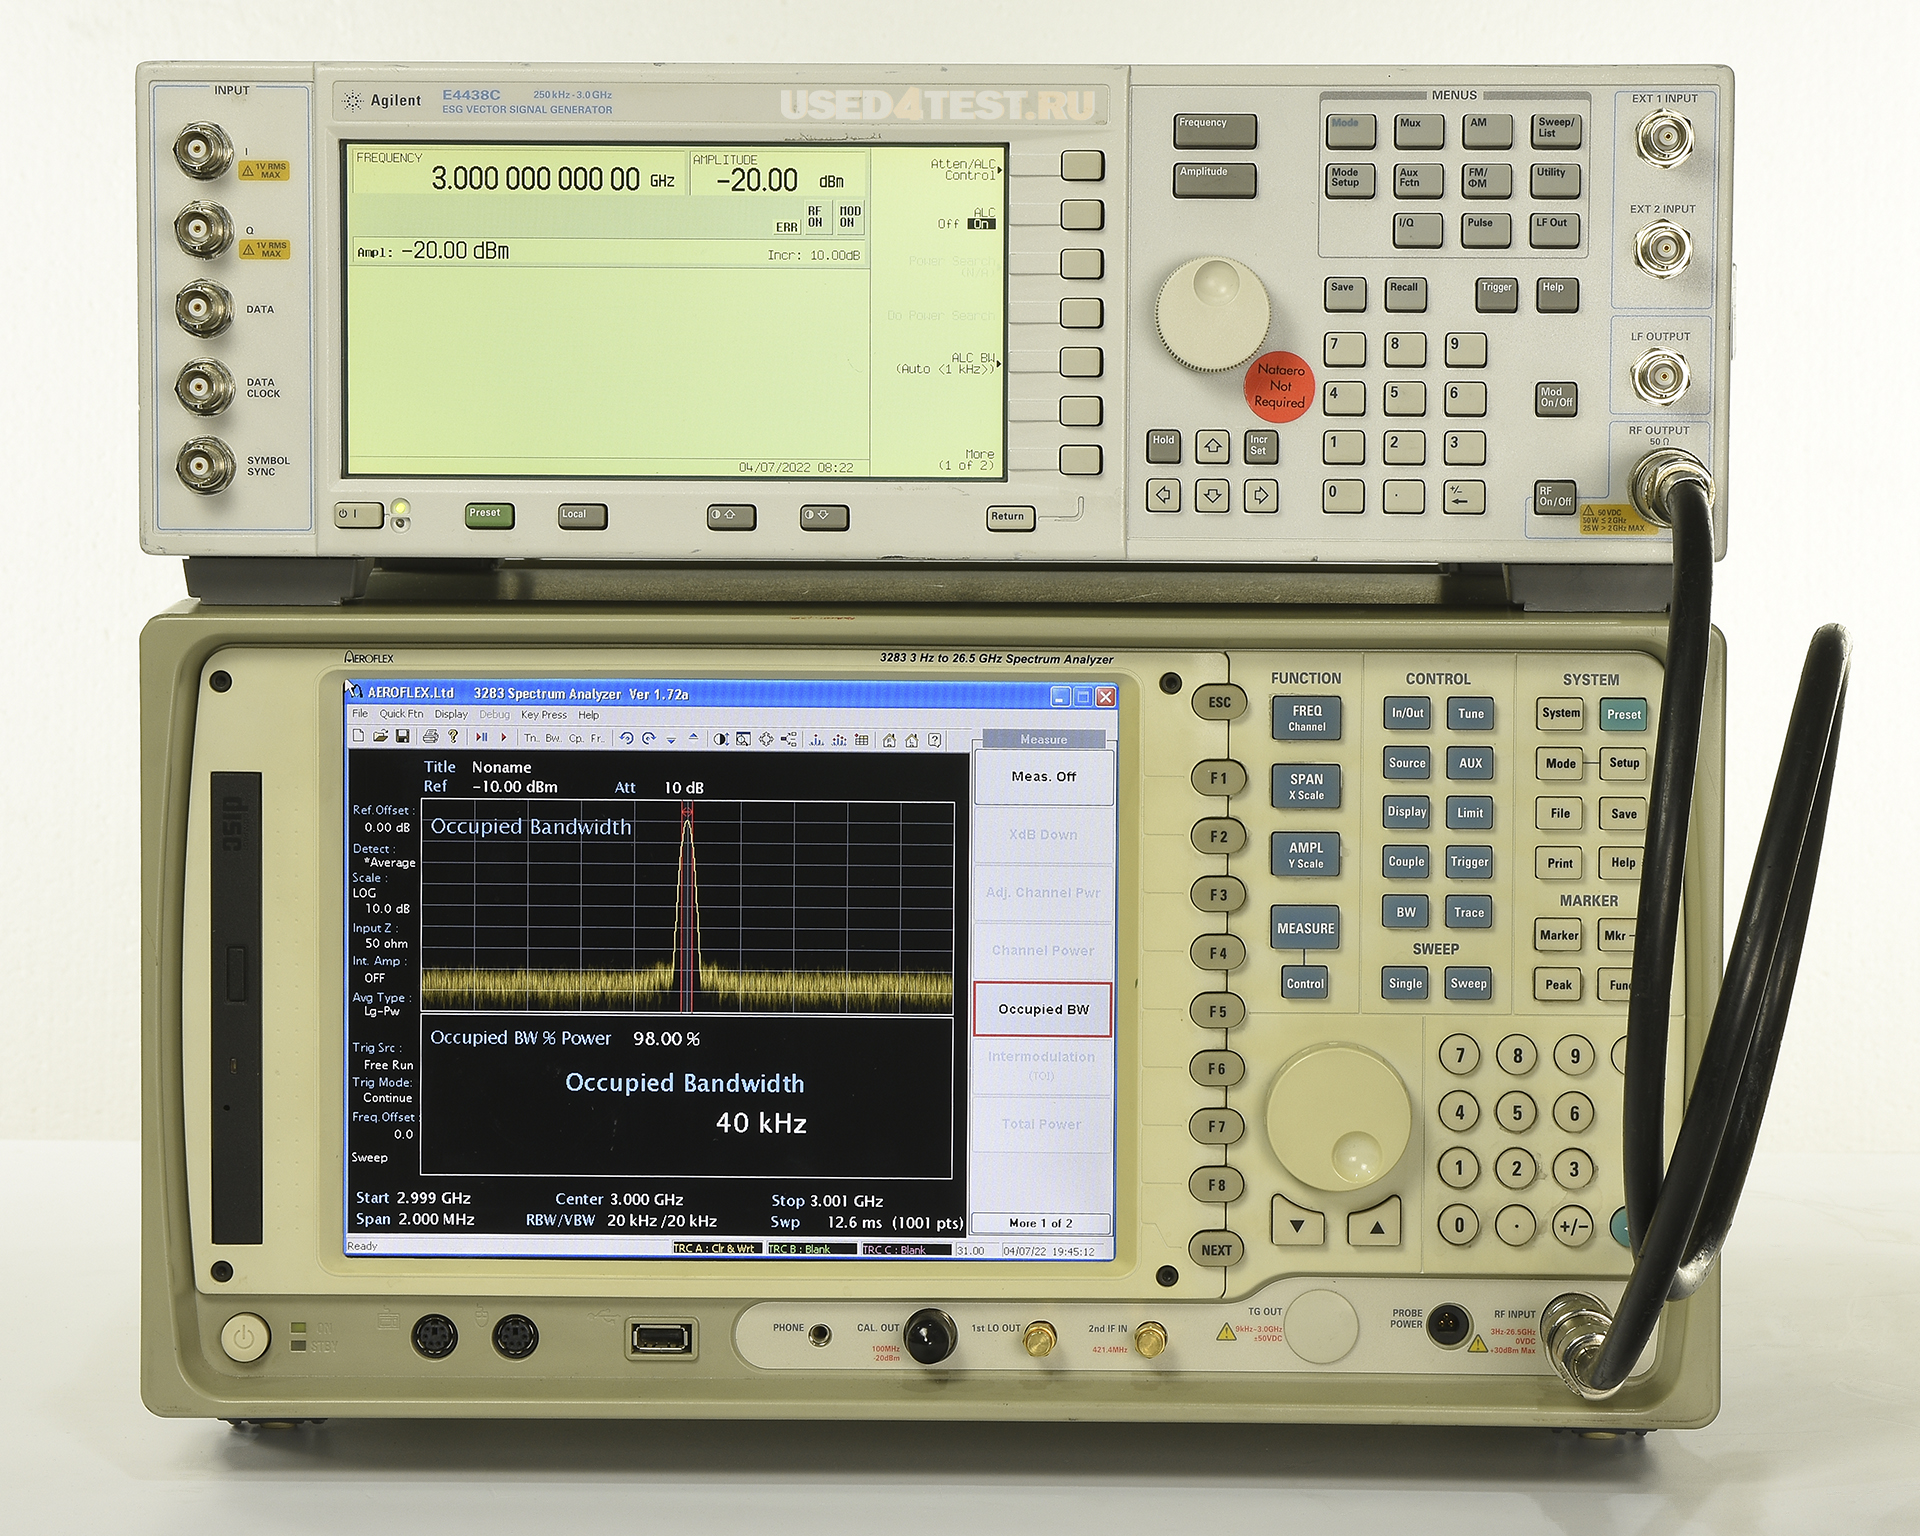 Анализатор спектра Aeroflex 3283с диапазоном от 3 Гц до 26,5 ГГц 
 
 
 

 Стоимость указана в Рублях DDP Москва по безналичному расчету без НДС

